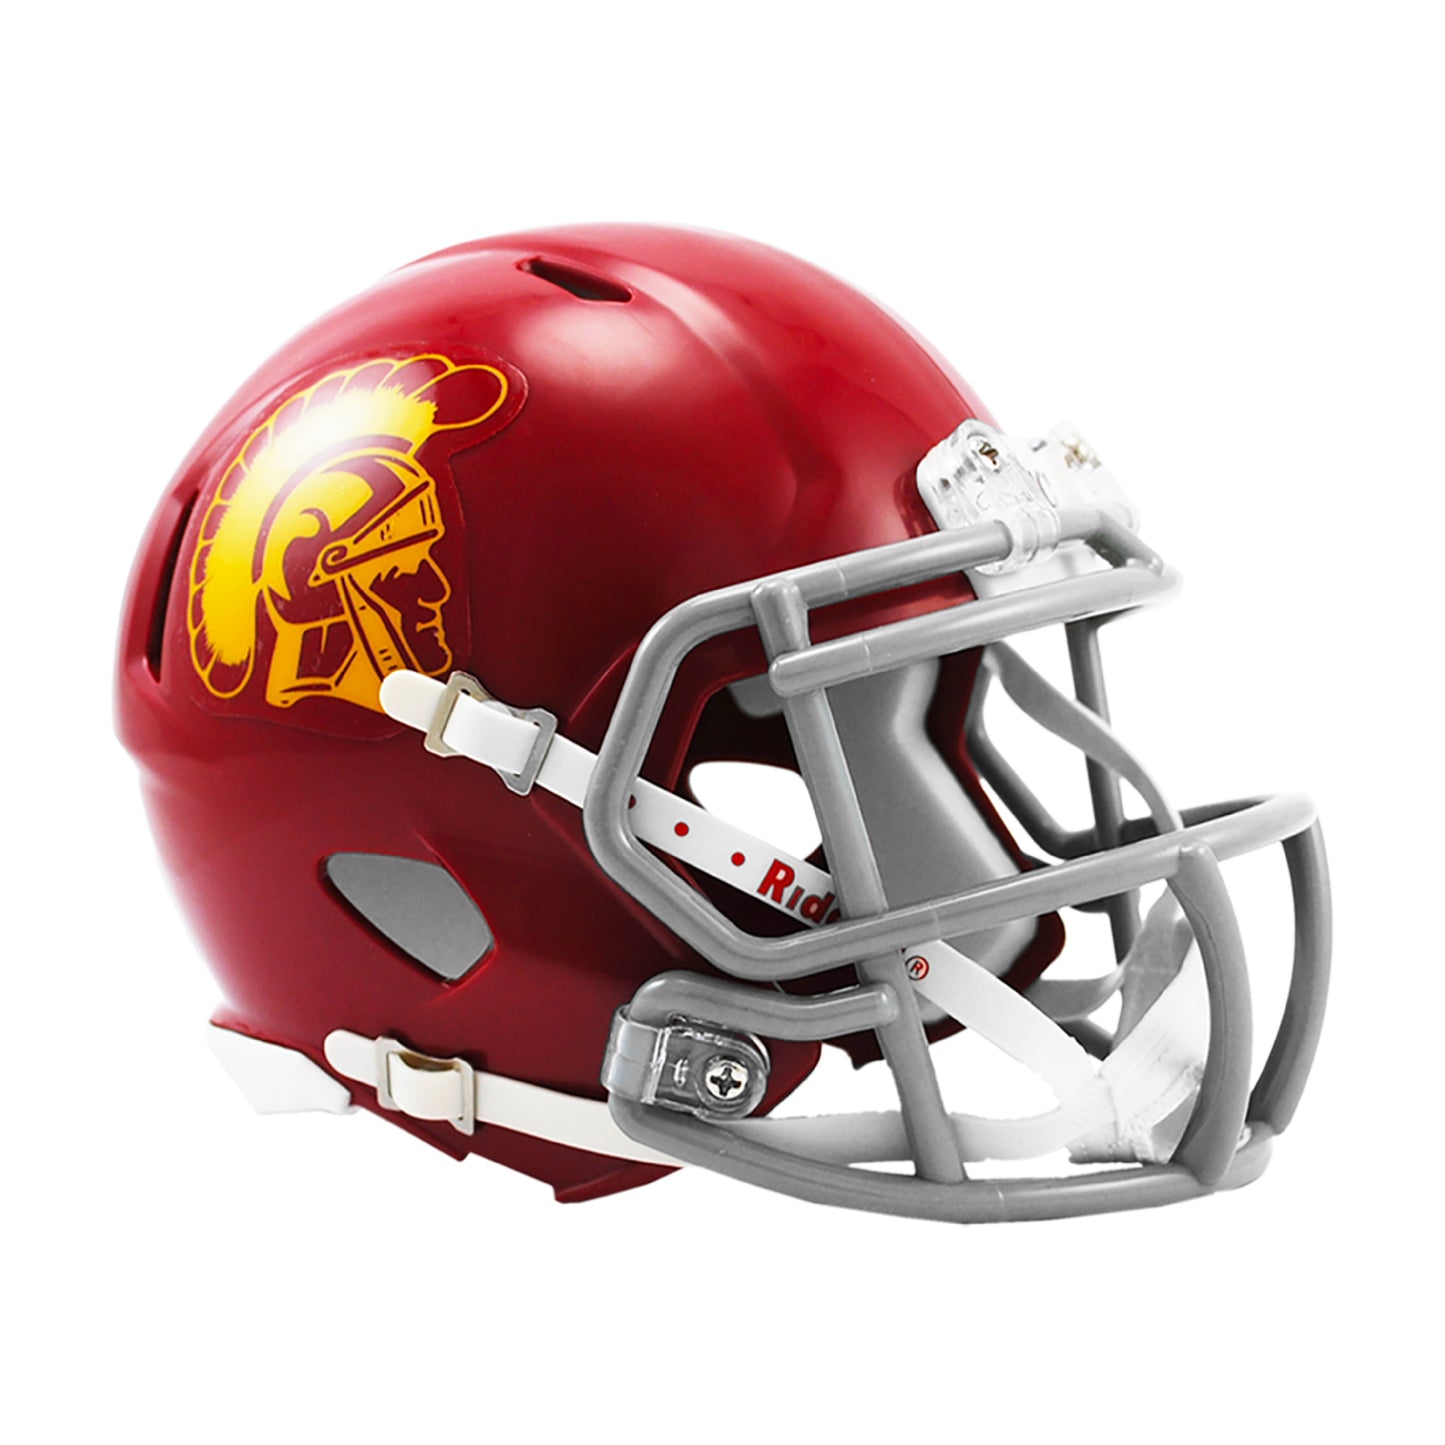 USC Trojans Riddell Speed Mini Football Helmet